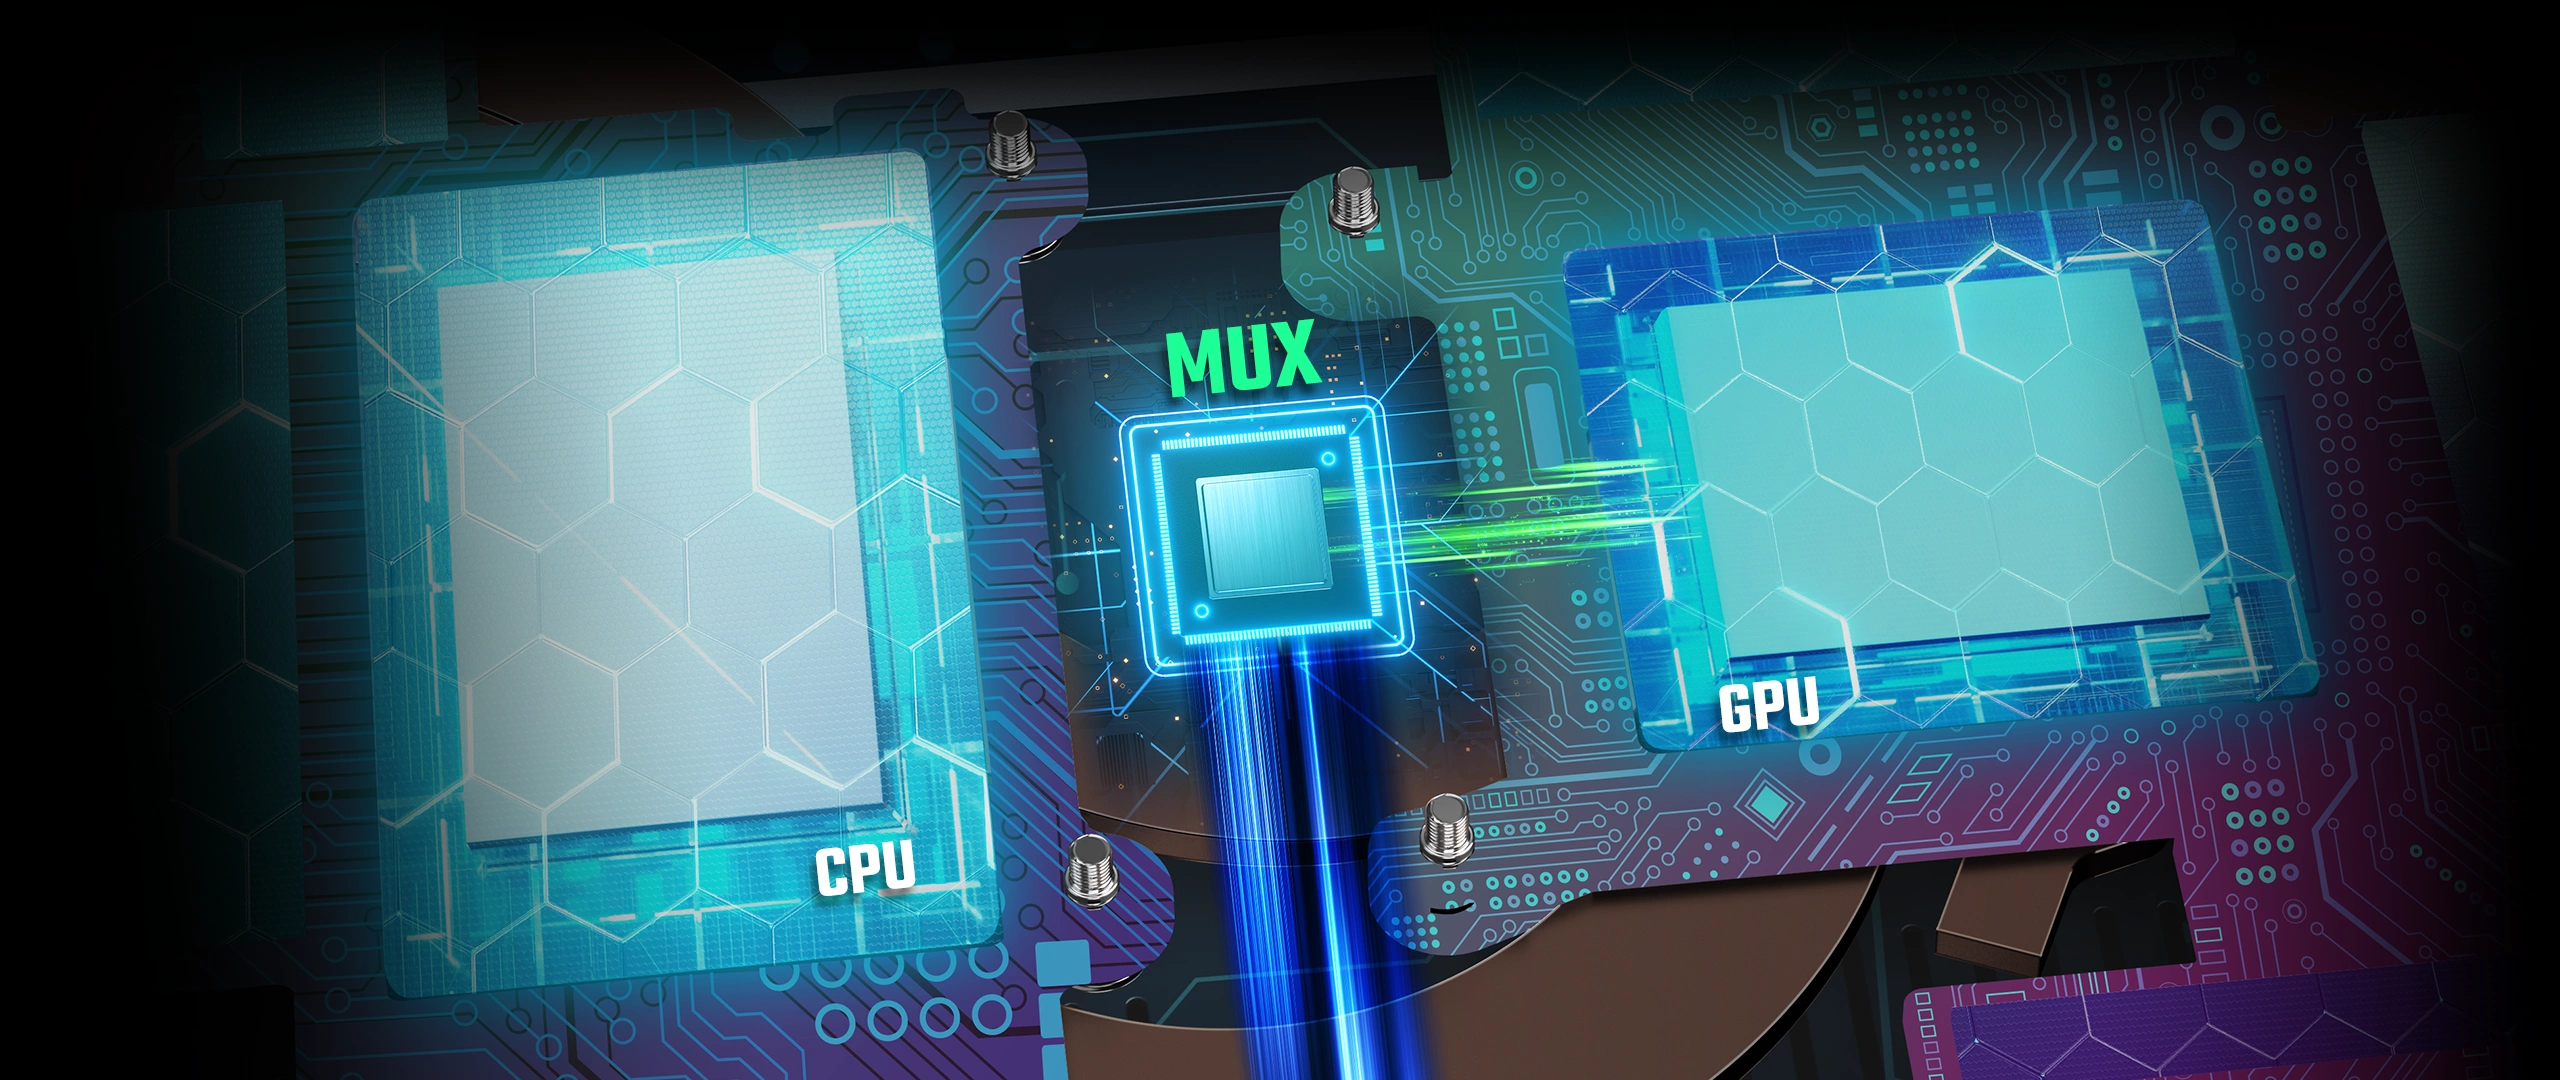 1) Được cập nhật lên bộ vi xử lý AMD Ryzen, Nitro 5 CPU hiện là một trong những lựa chọn tốt nhất cho những người yêu thích game đòi hỏi hiệu năng cao. Hãy xem hình ảnh liên quan để thấy sức mạnh của Nitro 5 và trải nghiệm mượt mà của những trò chơi khủng!

2) Với Amazon Avatar PC, bạn sẽ được trải nghiệm những trò chơi đỉnh cao từng được giới game thủ hóng mong. Ảnh liên quan sẽ cho bạn cái nhìn rõ nét nhất về thiết kế tuyệt vời của sản phẩm này!

3) Avatar Reckoning miễn phí cho Android IOS chắc chắn sẽ làm bạn phấn khích. Chỉ cần tải ứng dụng và bạn sẽ được trải nghiệm những tính năng đỉnh cao và không giới hạn. Hãy xem hình ảnh liên quan để tìm thấy niềm tin của chúng tôi đối với sản phẩm này!

4) Avatar The Game mọi lúc mọi nơi cùng với bộ sưu tập hình nền điện thoại di động. Với độ phân giải cực cao, bạn sẽ ngỡ ngàng trước những hình ảnh tuyệt đẹp và sống động nhất. Hãy xem hình ảnh liên quan để tìm thấy chiếc điện thoại hoàn hảo cho bạn!

5) Avatar Reckoning MMORPG sắp trở lại với những tính năng mới và tuyệt vời hơn. Để có cái nhìn đầy đủ nhất về trò chơi, hãy xem hình ảnh liên quan để khám phá tầm quan trọng của Avatar Reckoning trong thế giới game đua top.